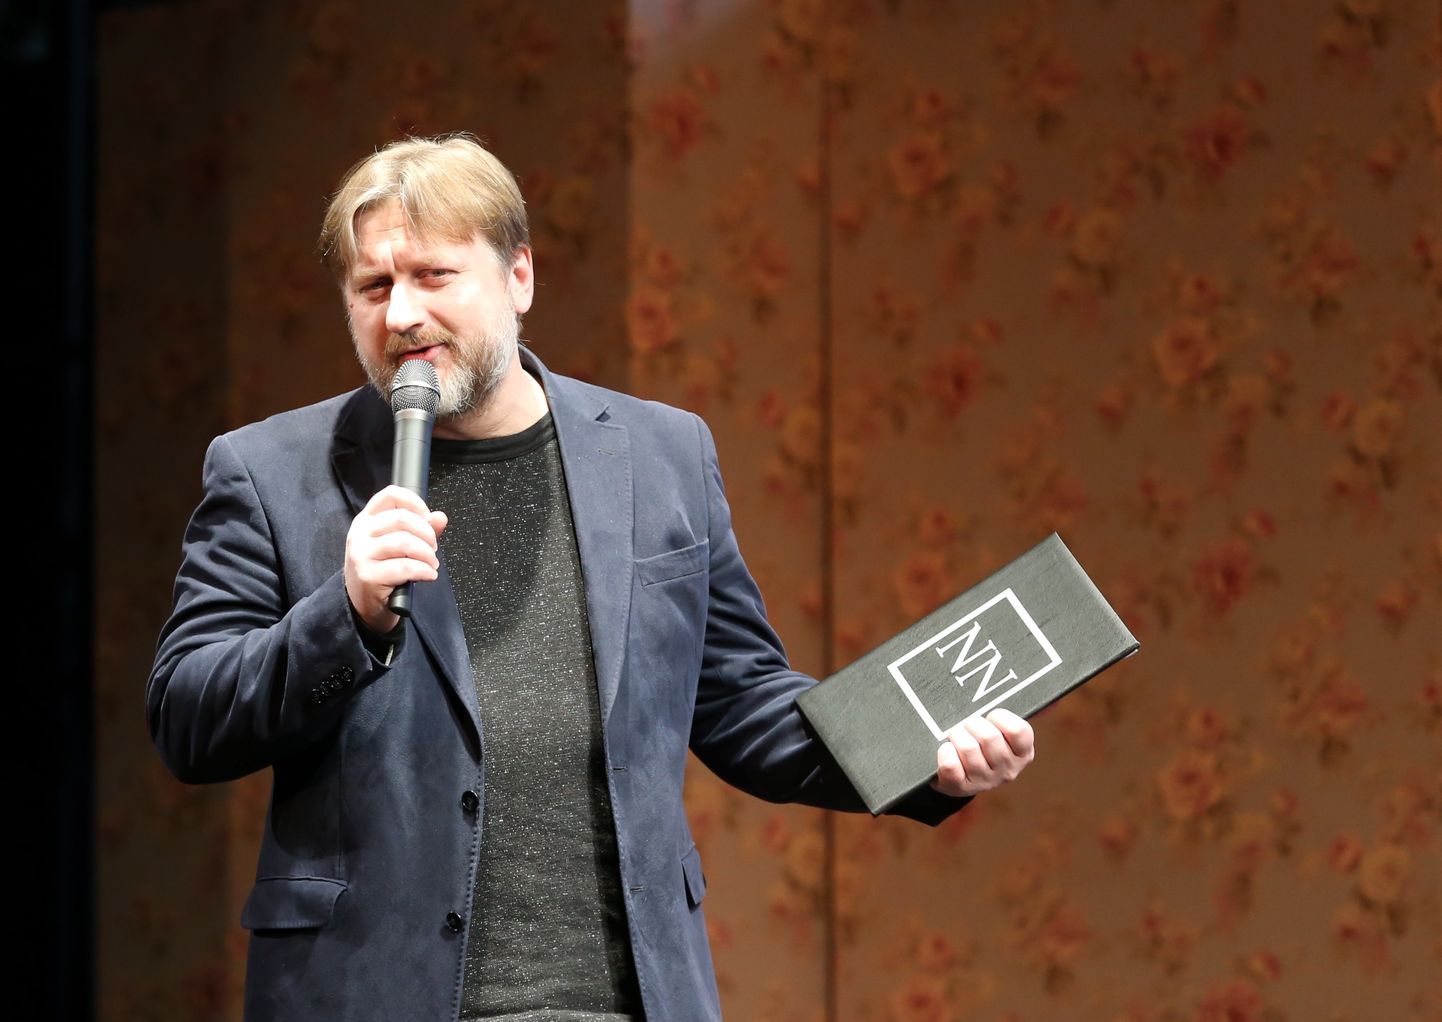 Publicists, portāla "satori.lv" redaktors Ilmārs Šlāpins piedalās kritiķa Normunda Naumaņa vārdā nosauktās Gada balvas mākslas kritikā pasniegšanas ceremonijā Jaunajā Rīgas teātrī.